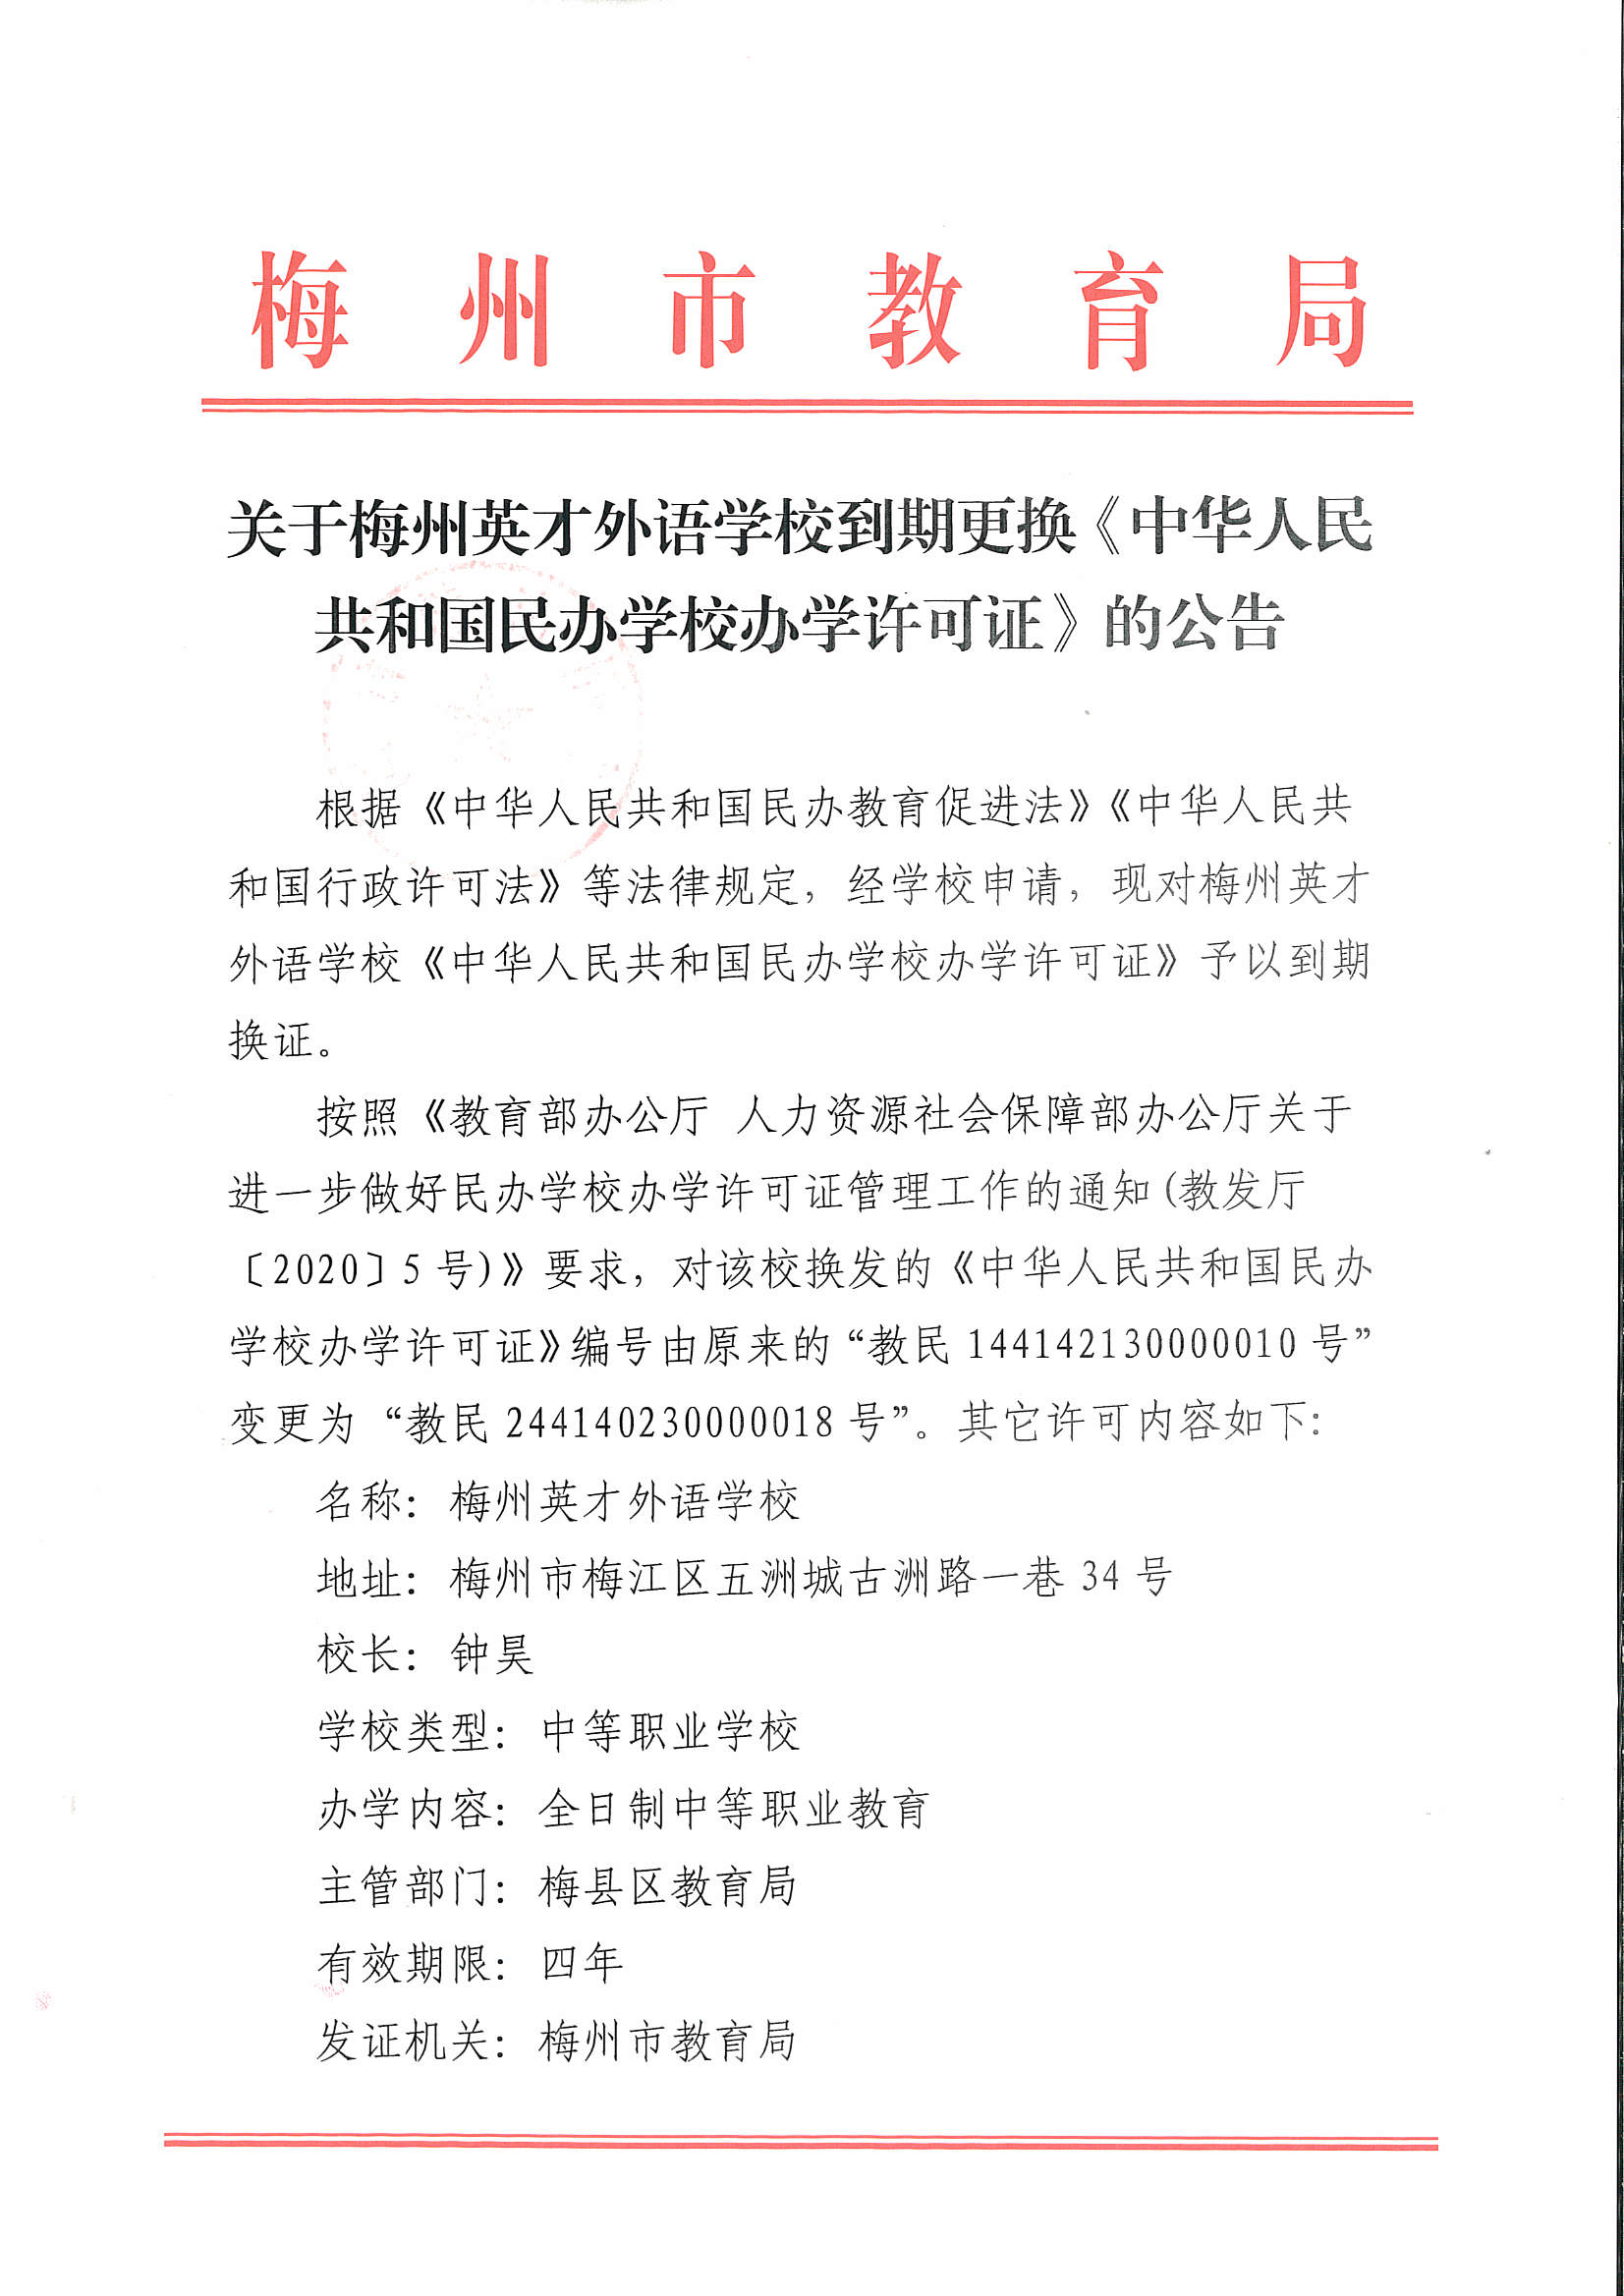 关于梅州英才外语学校到期更换《中华人民共和国民办学校办学许可证》的公告_页面_1.png